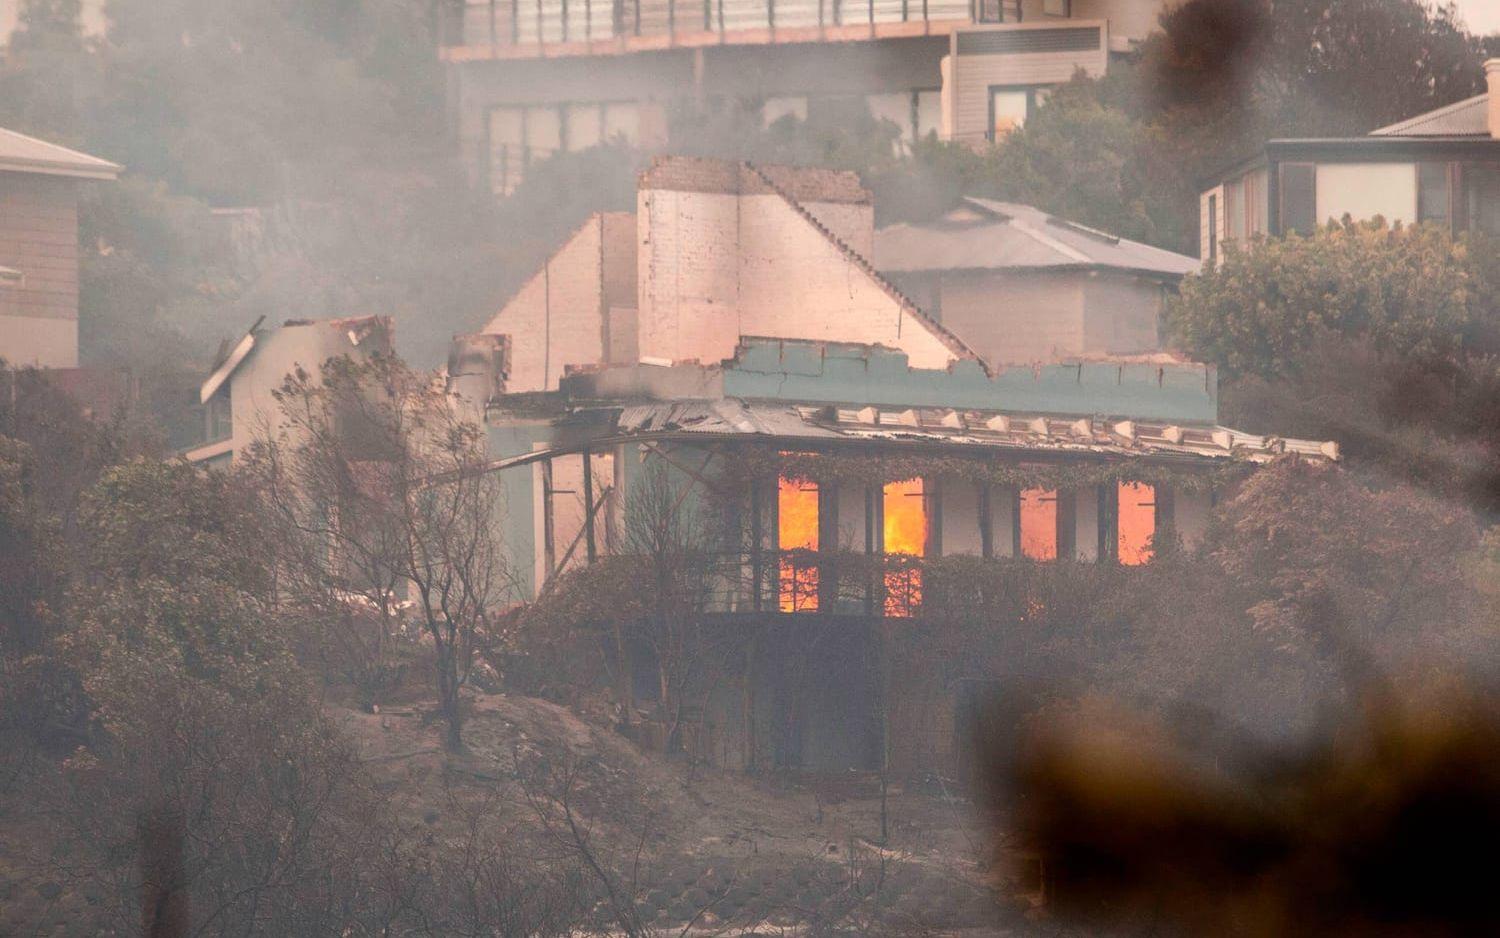 Även om Knysna är värst drabbat, har invånare i ett flertal andra områden evakuerats på grund av bränderna, däribland boende i Plettenburg Bay. Bild: TT